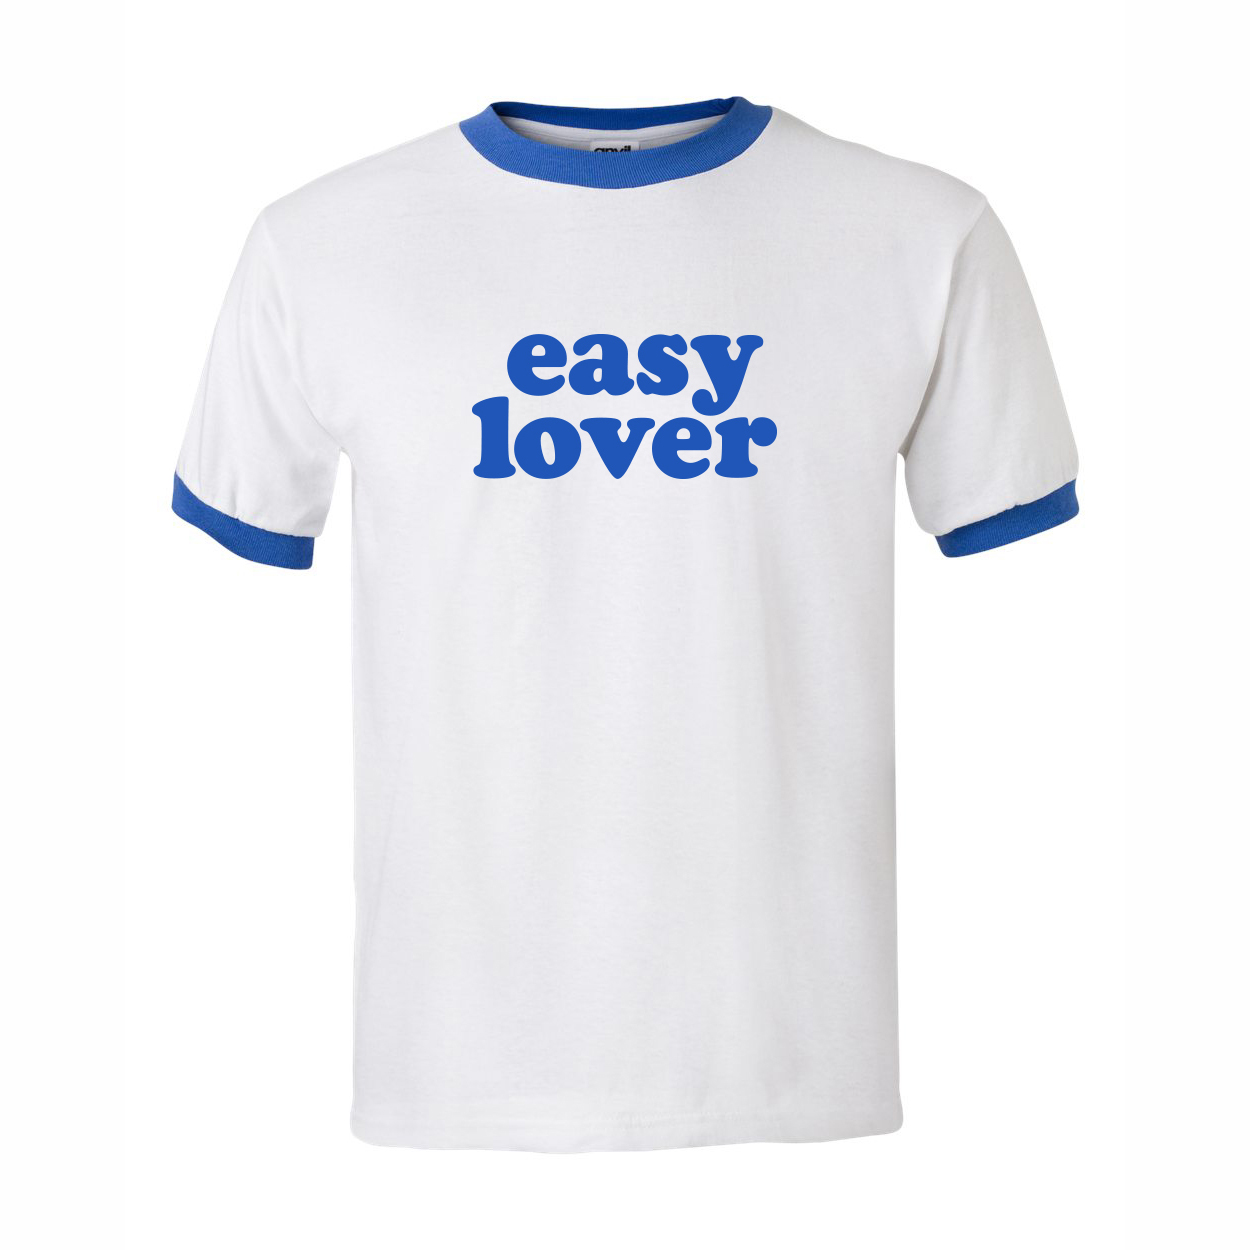 Kommerz mit Herz T-Shirt "Easy Lover" (Blau) Shirt Weiss